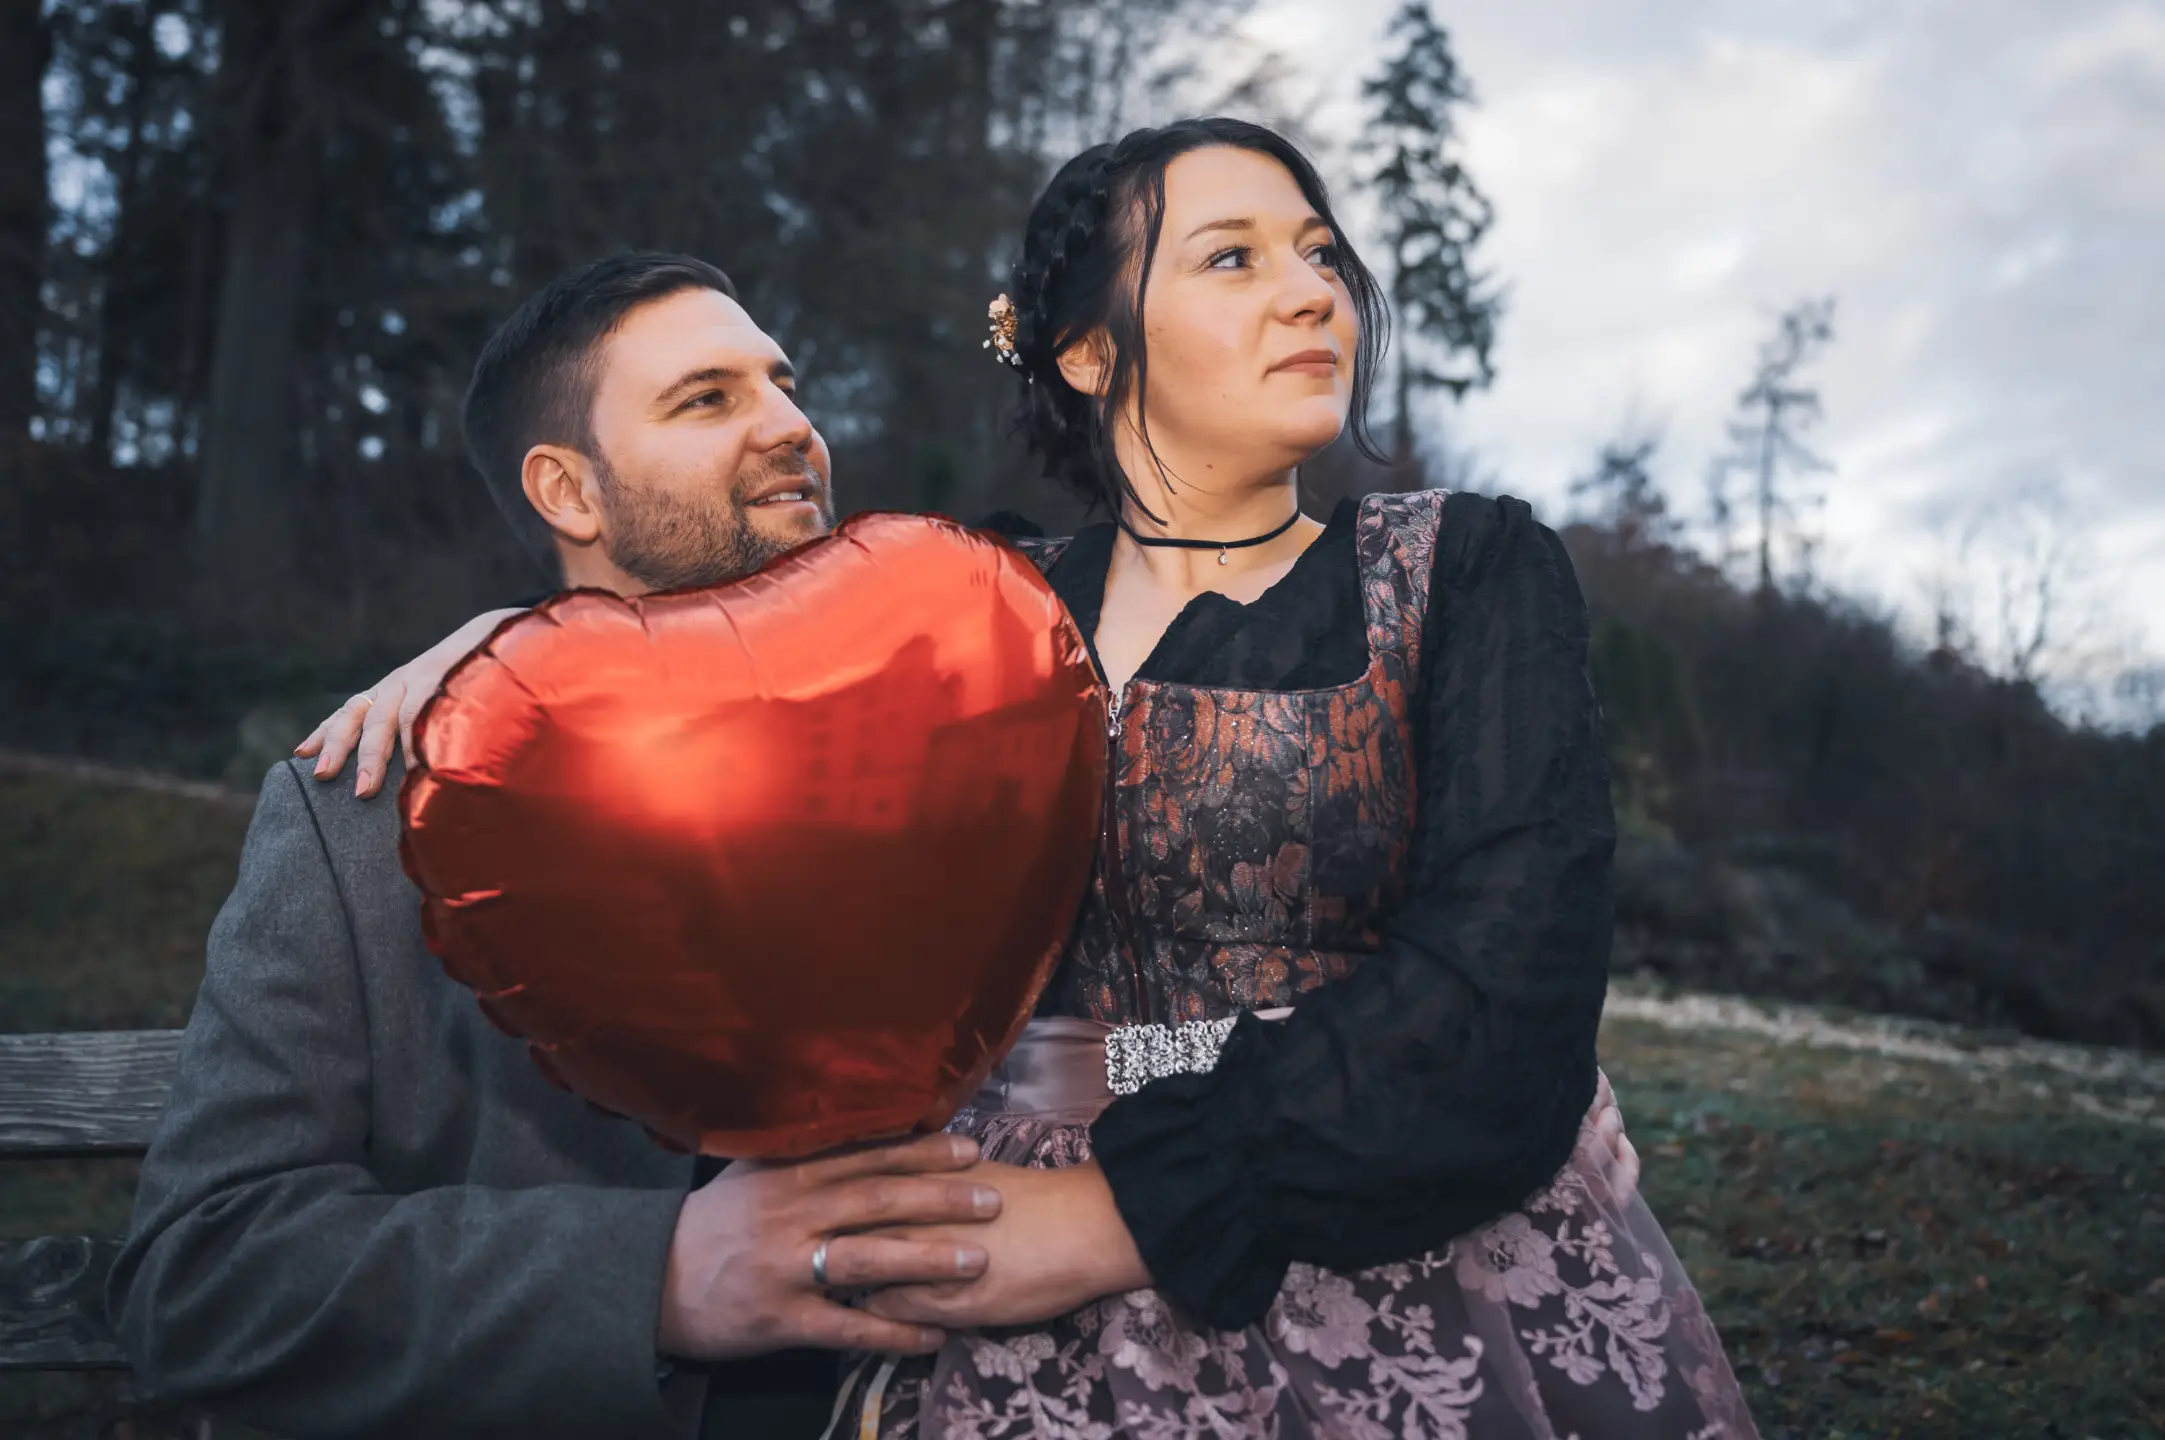 Verliebtes Brautpaar mit rotem Herzluftballon | Kreidt-Fotografie (Glückliche Momente, Zärtlichkeit, Liebe)